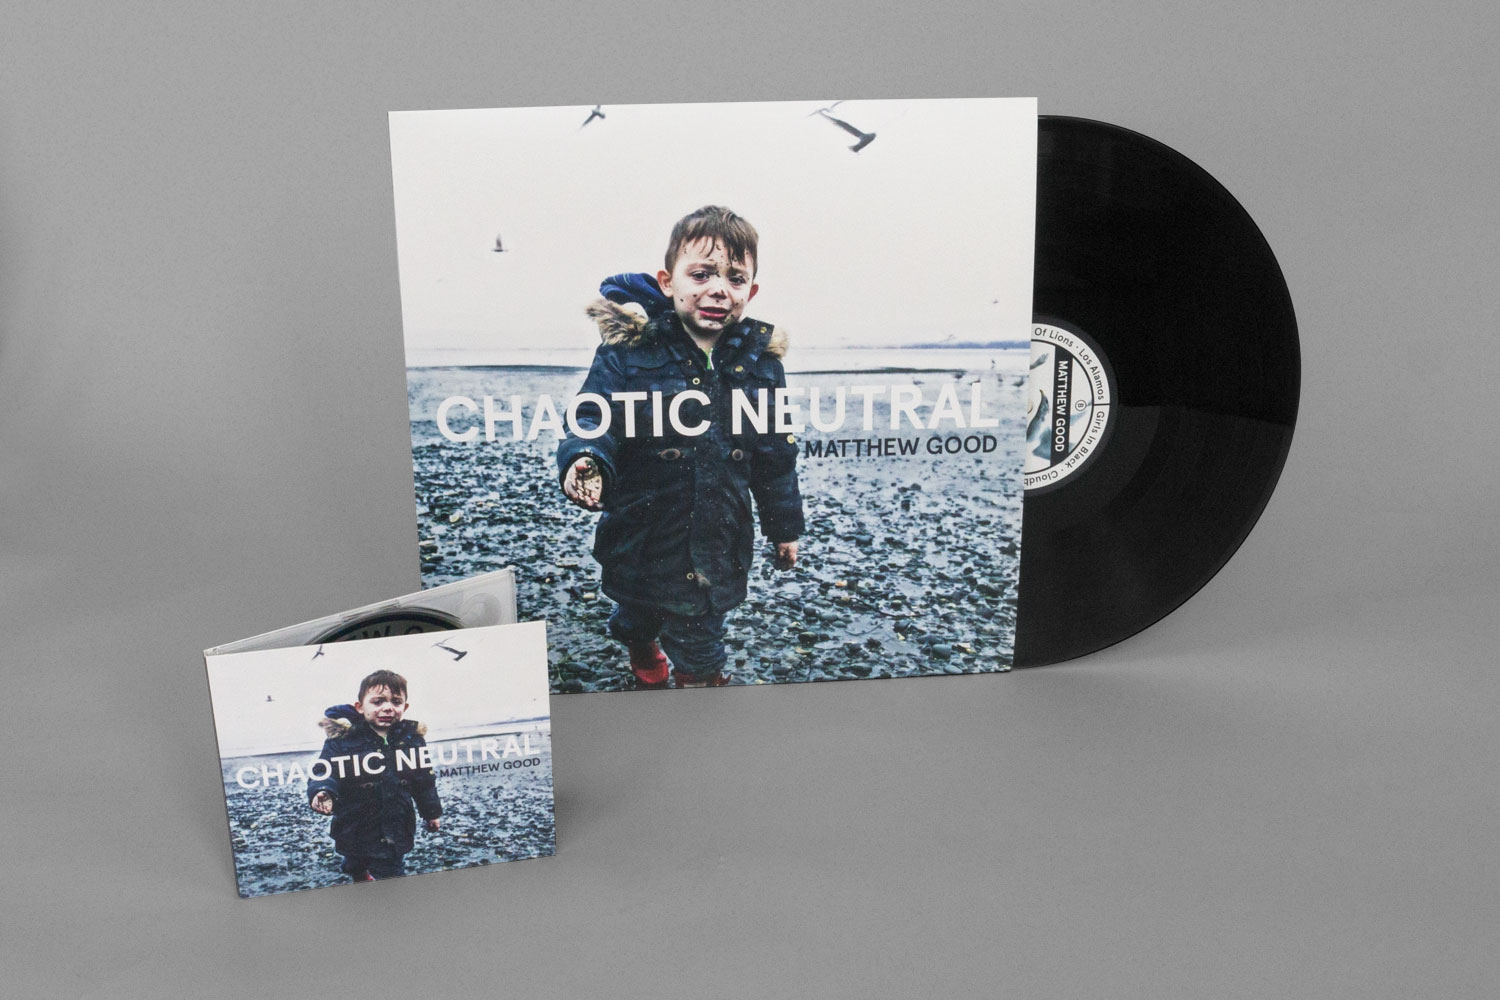 Matthew Good Chaotic Neutral album art